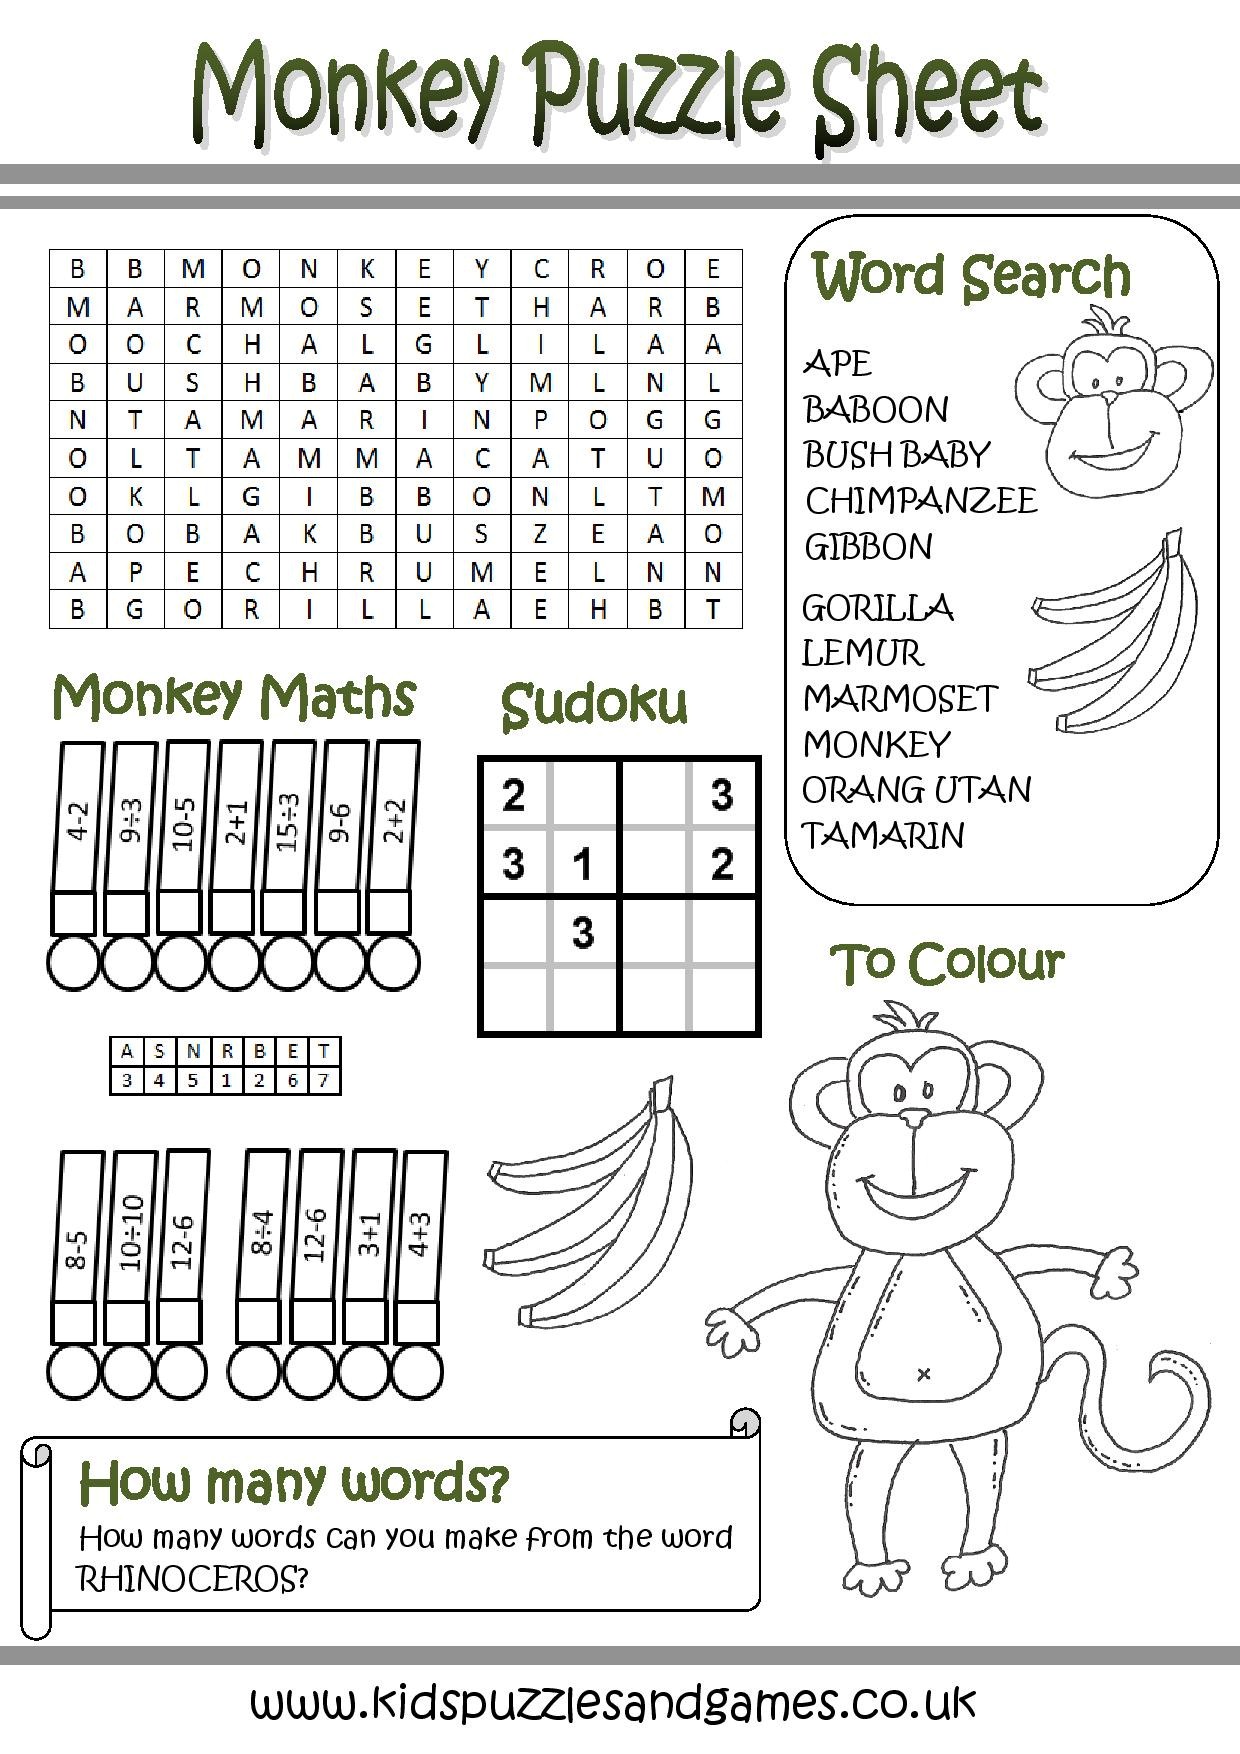 MonkeyPuzzle